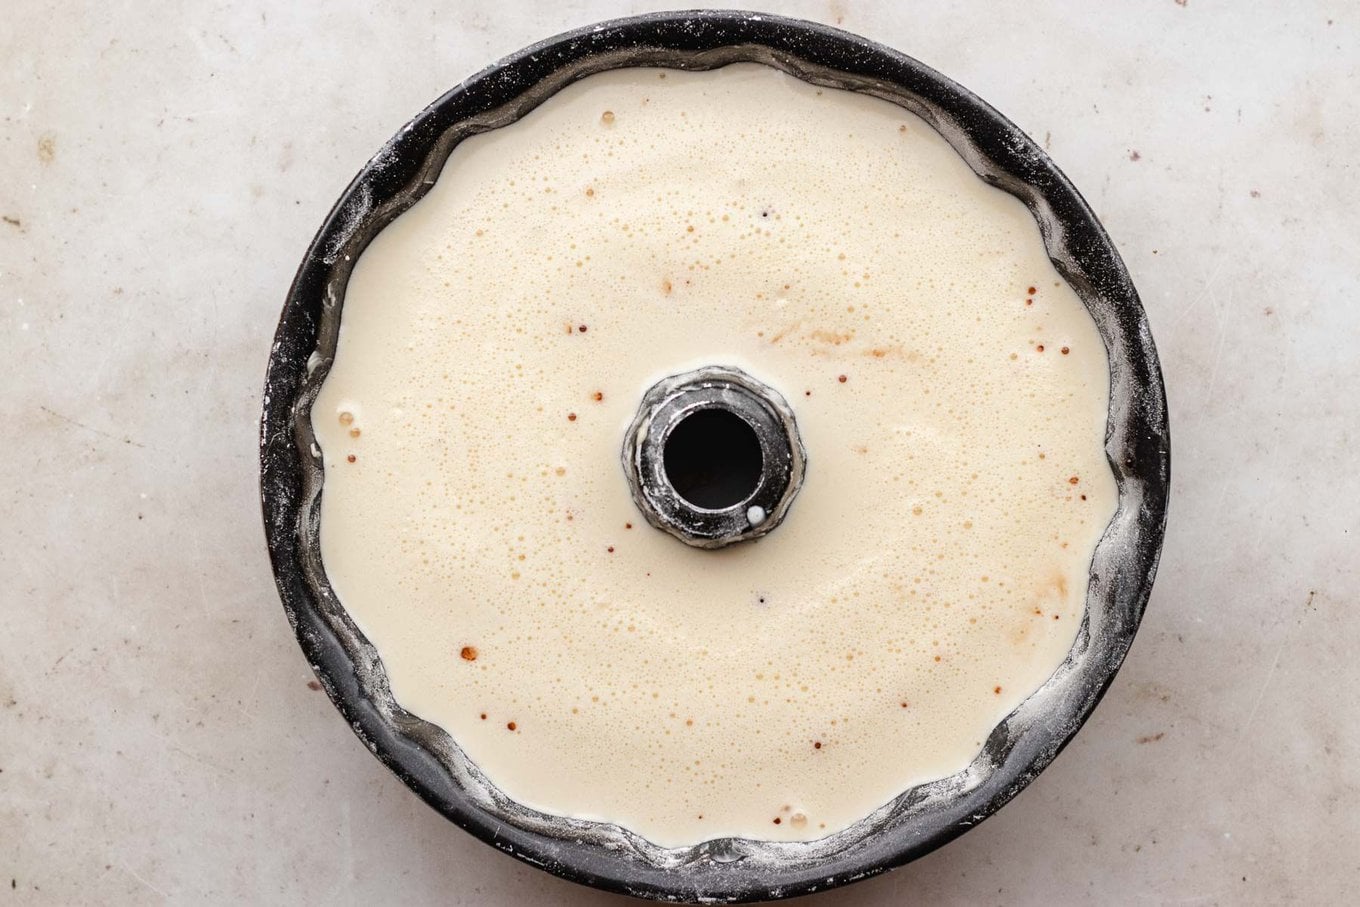 Chocoflan cake batter and flan layer assembled in Bundt pan before baking. horizontal photo